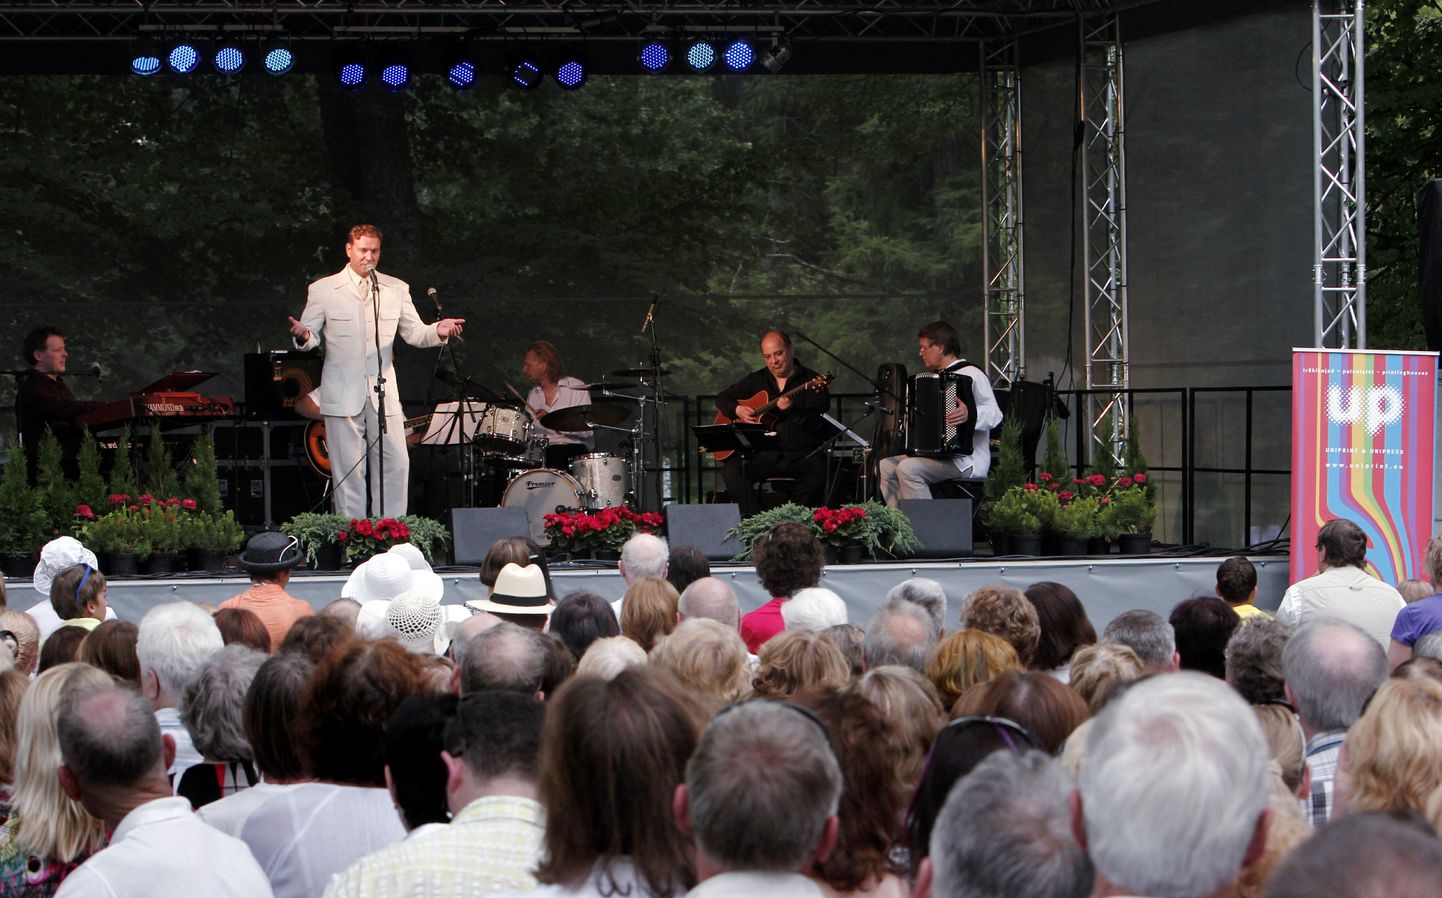 Festivali "Kummardus Valgrele" kontsert Pärnus Ammende villa aias.